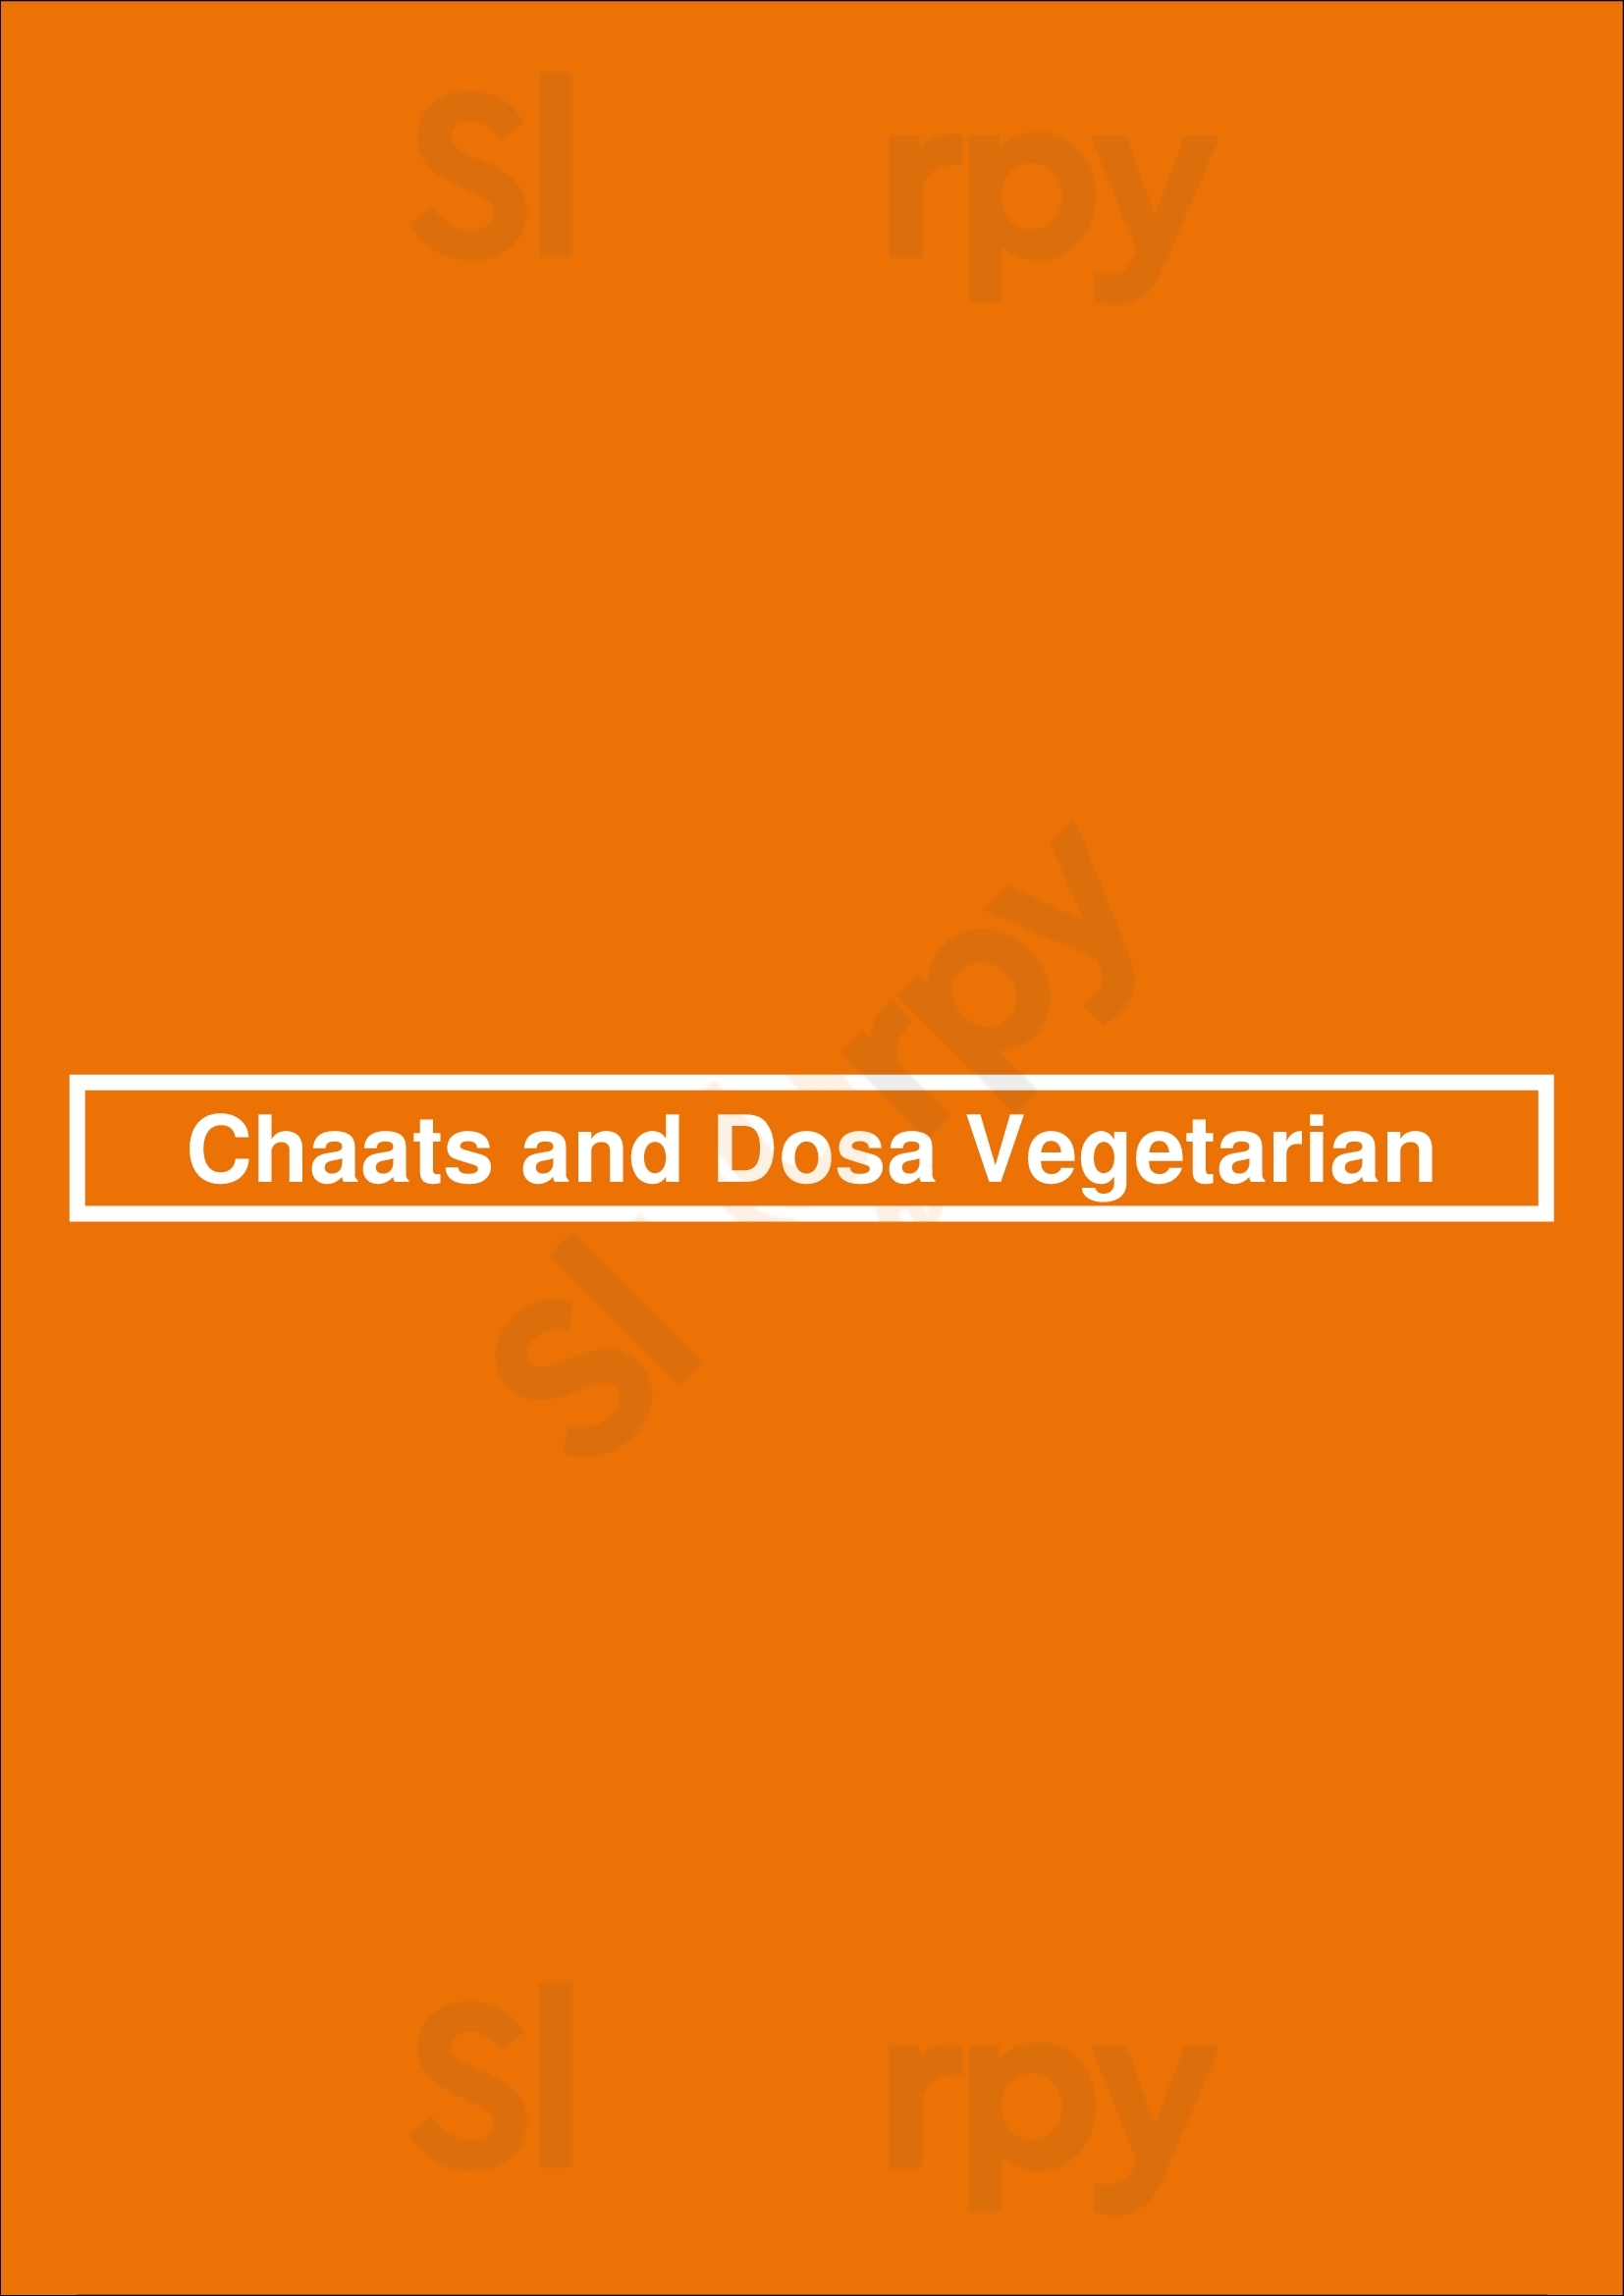 Chaats And Dosa Vegetarian Brampton Menu - 1